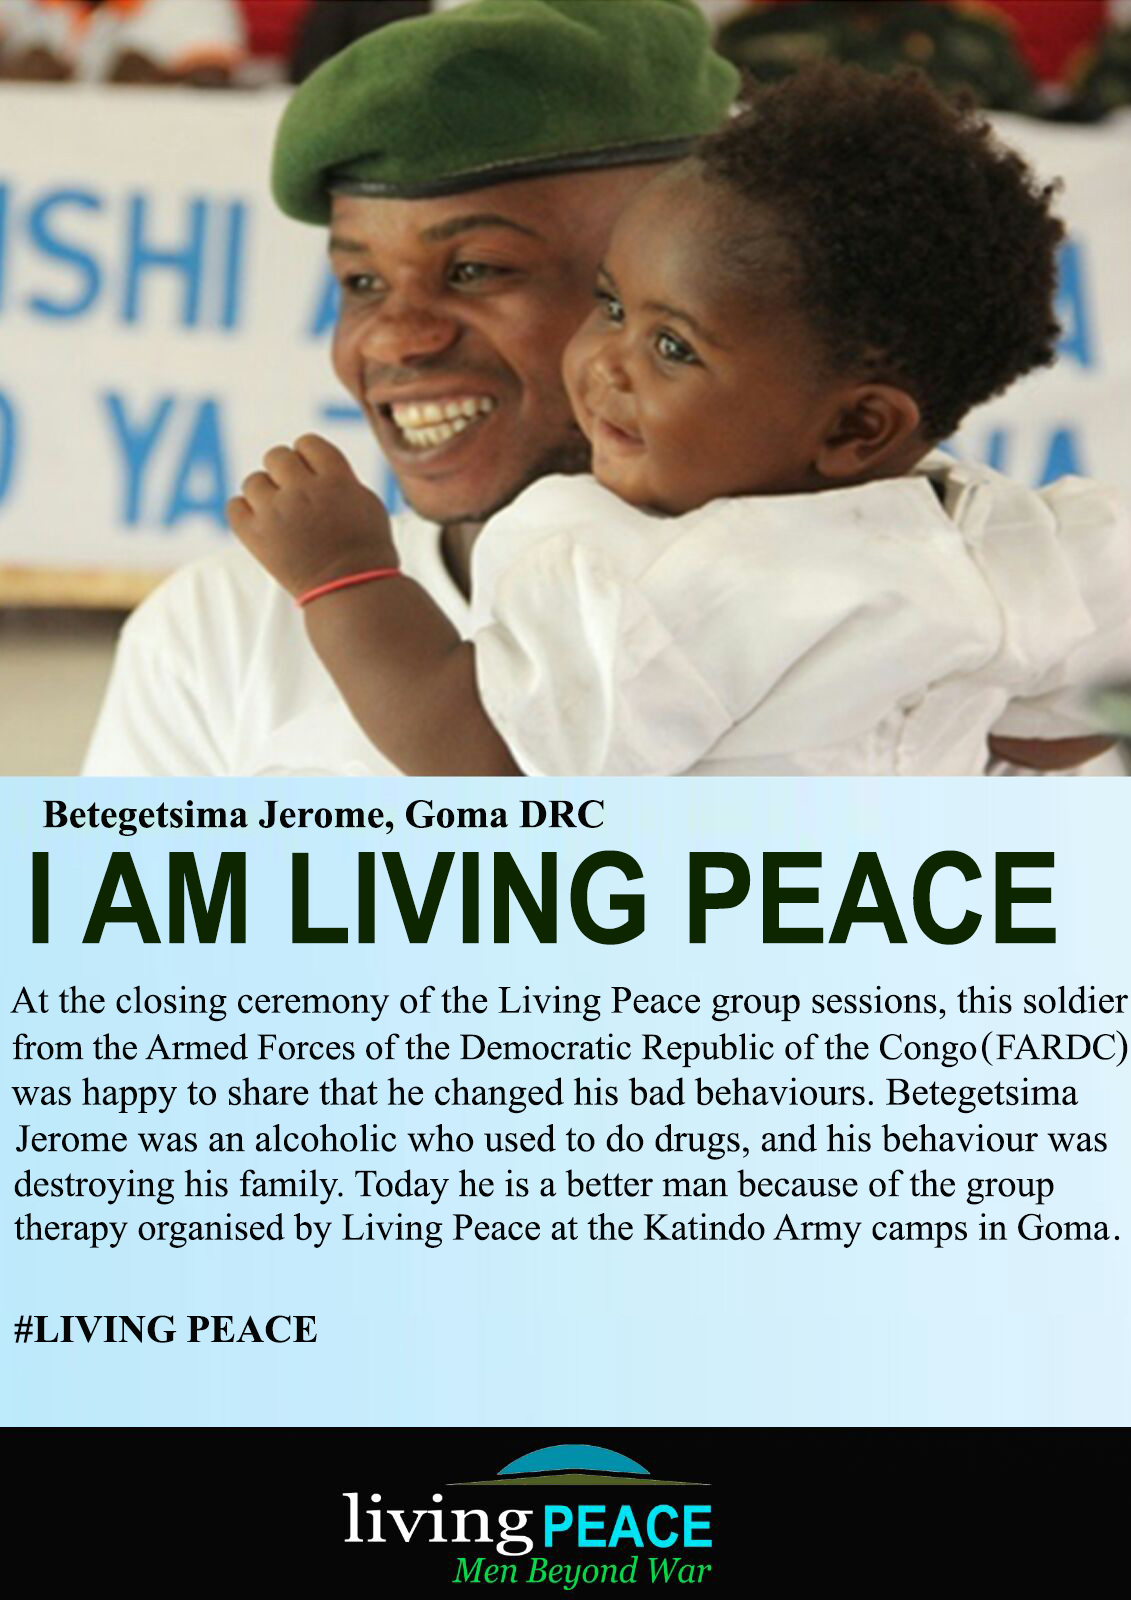 Living Peace Institute DRC - Poster 2 - Equimundo